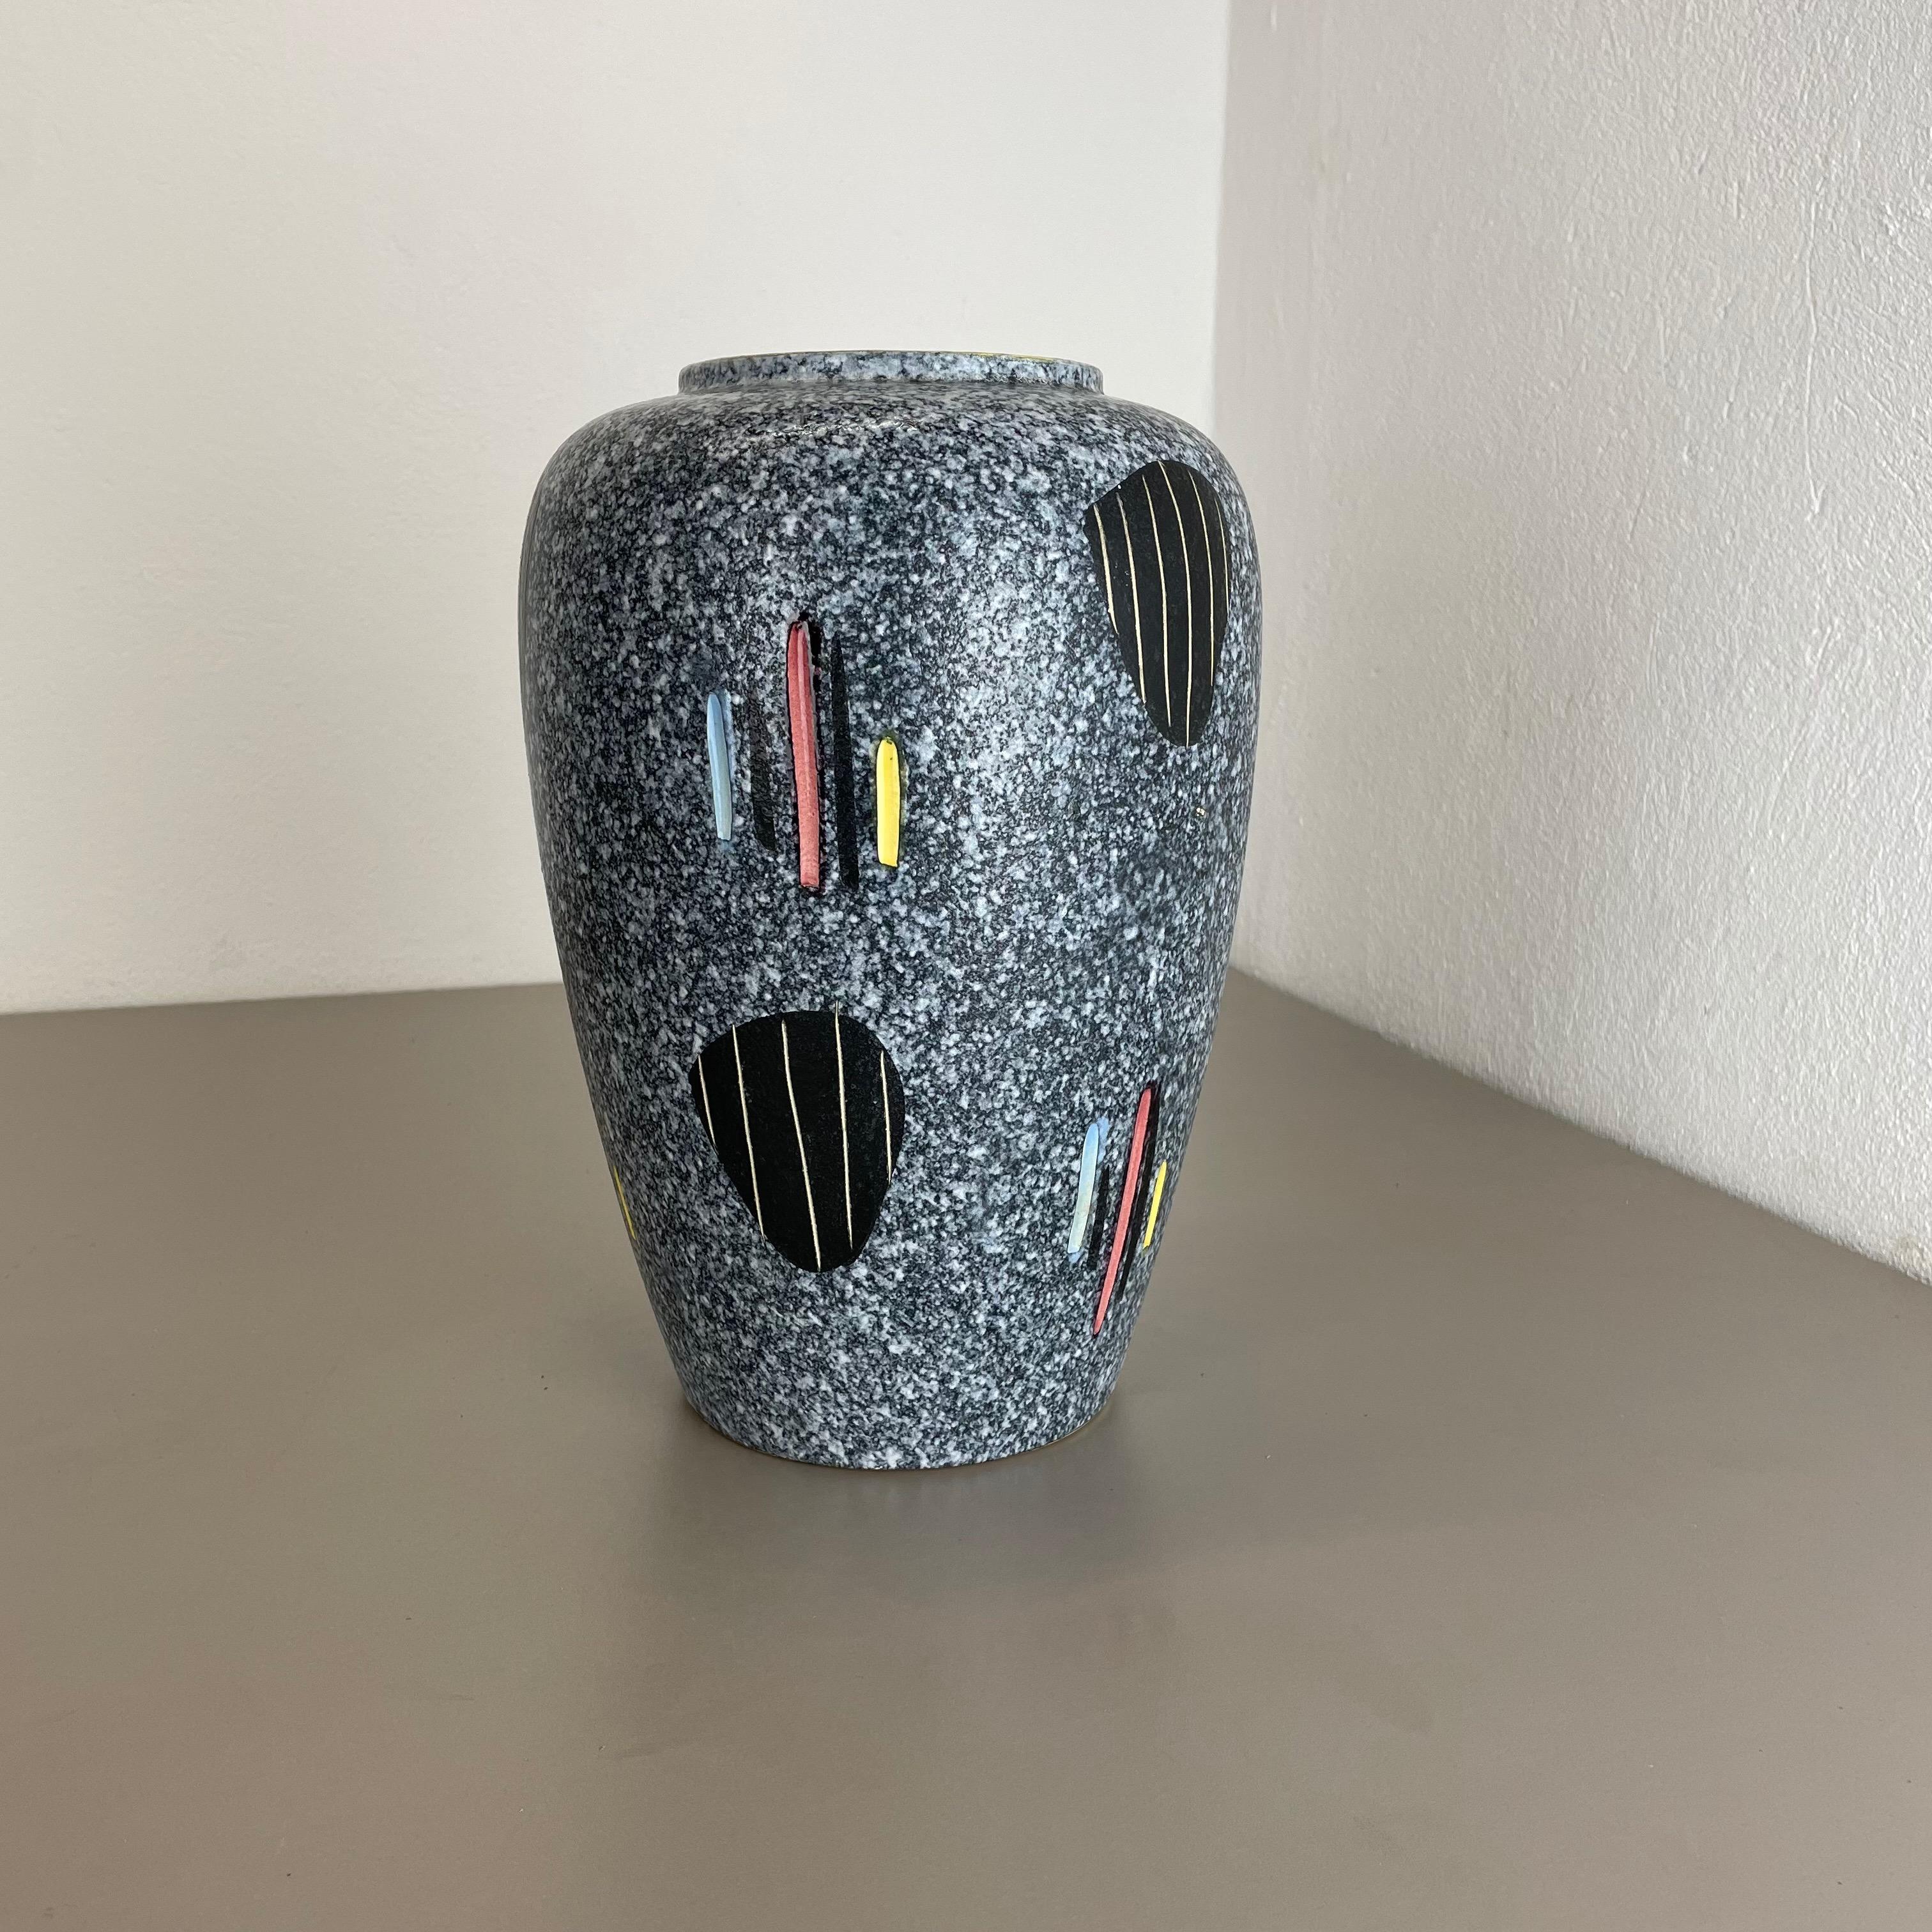 Artikel:

Vase aus Keramik


Produzent:

Scheurich FOREIGN Ceramic, Deutschland


Jahrzehnt:

1960s





Original Vintage Keramikvase aus den 1960er Jahren, hergestellt in Deutschland. Hochwertige deutsche Produktion mit einer